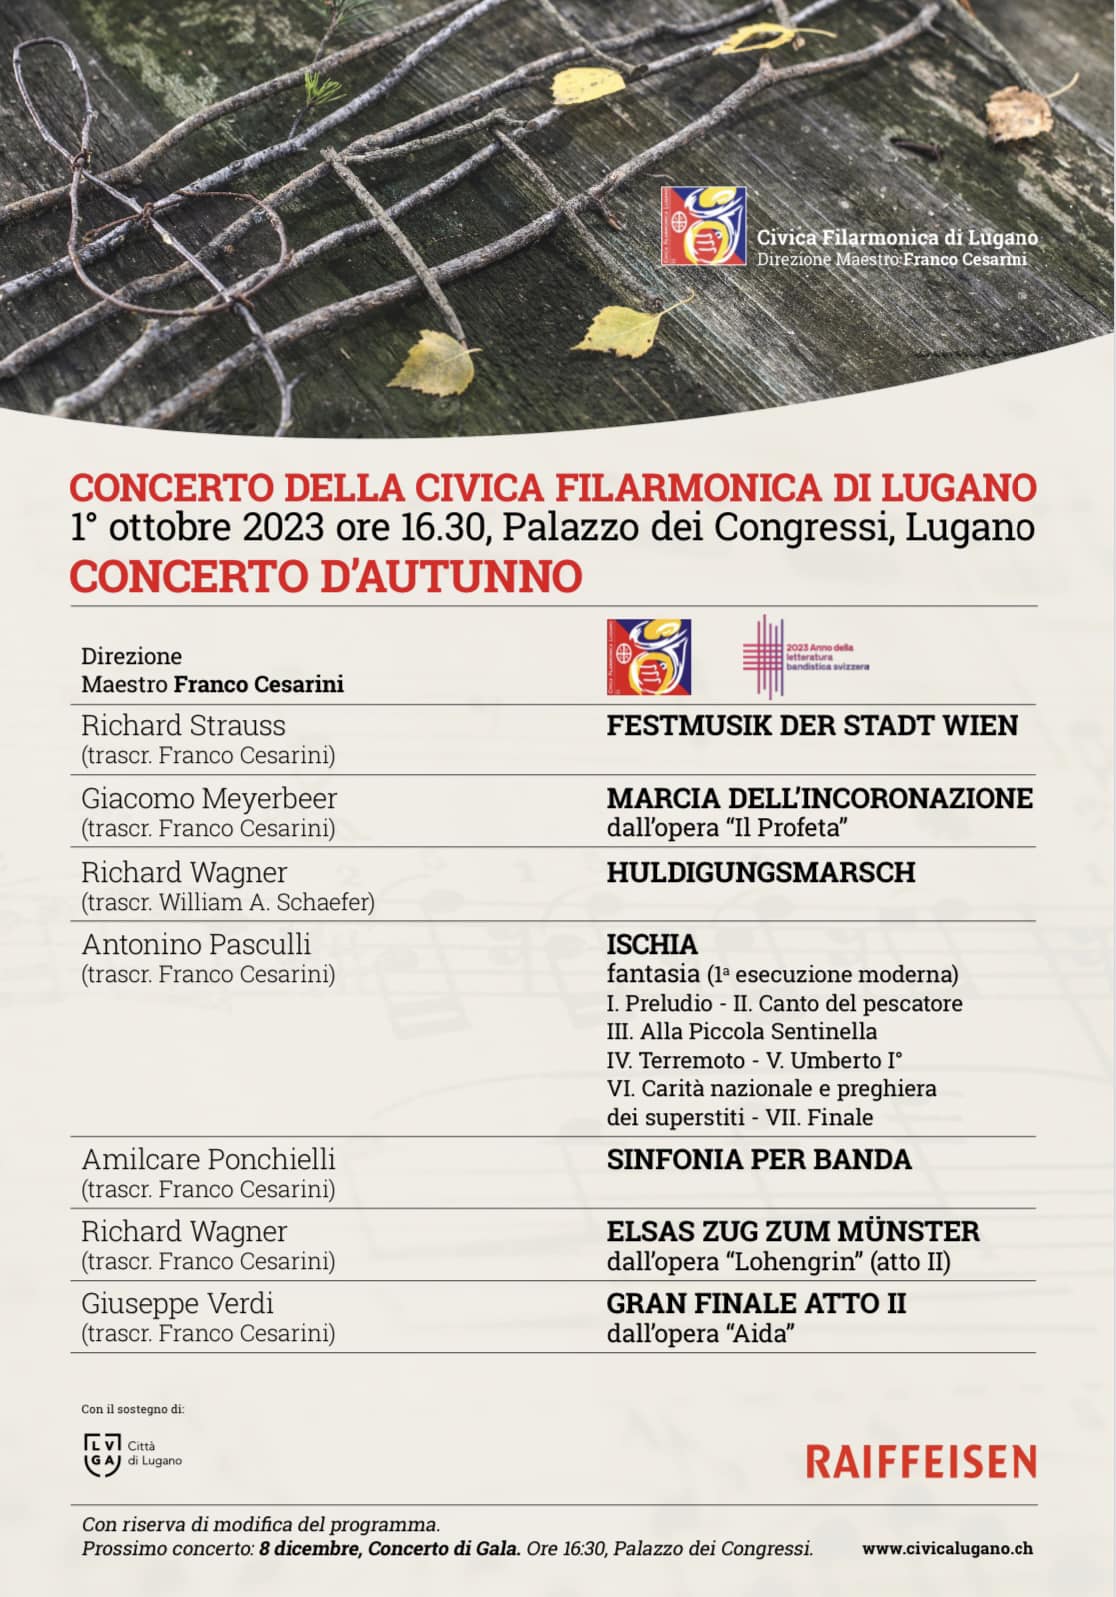 1. Oktober, 2023: Herbstkonzert der Civica Filarmonica di Lugano – Uraufführung von Ischia von Antonino Pasculli, arrangiert von Franco Cesarini